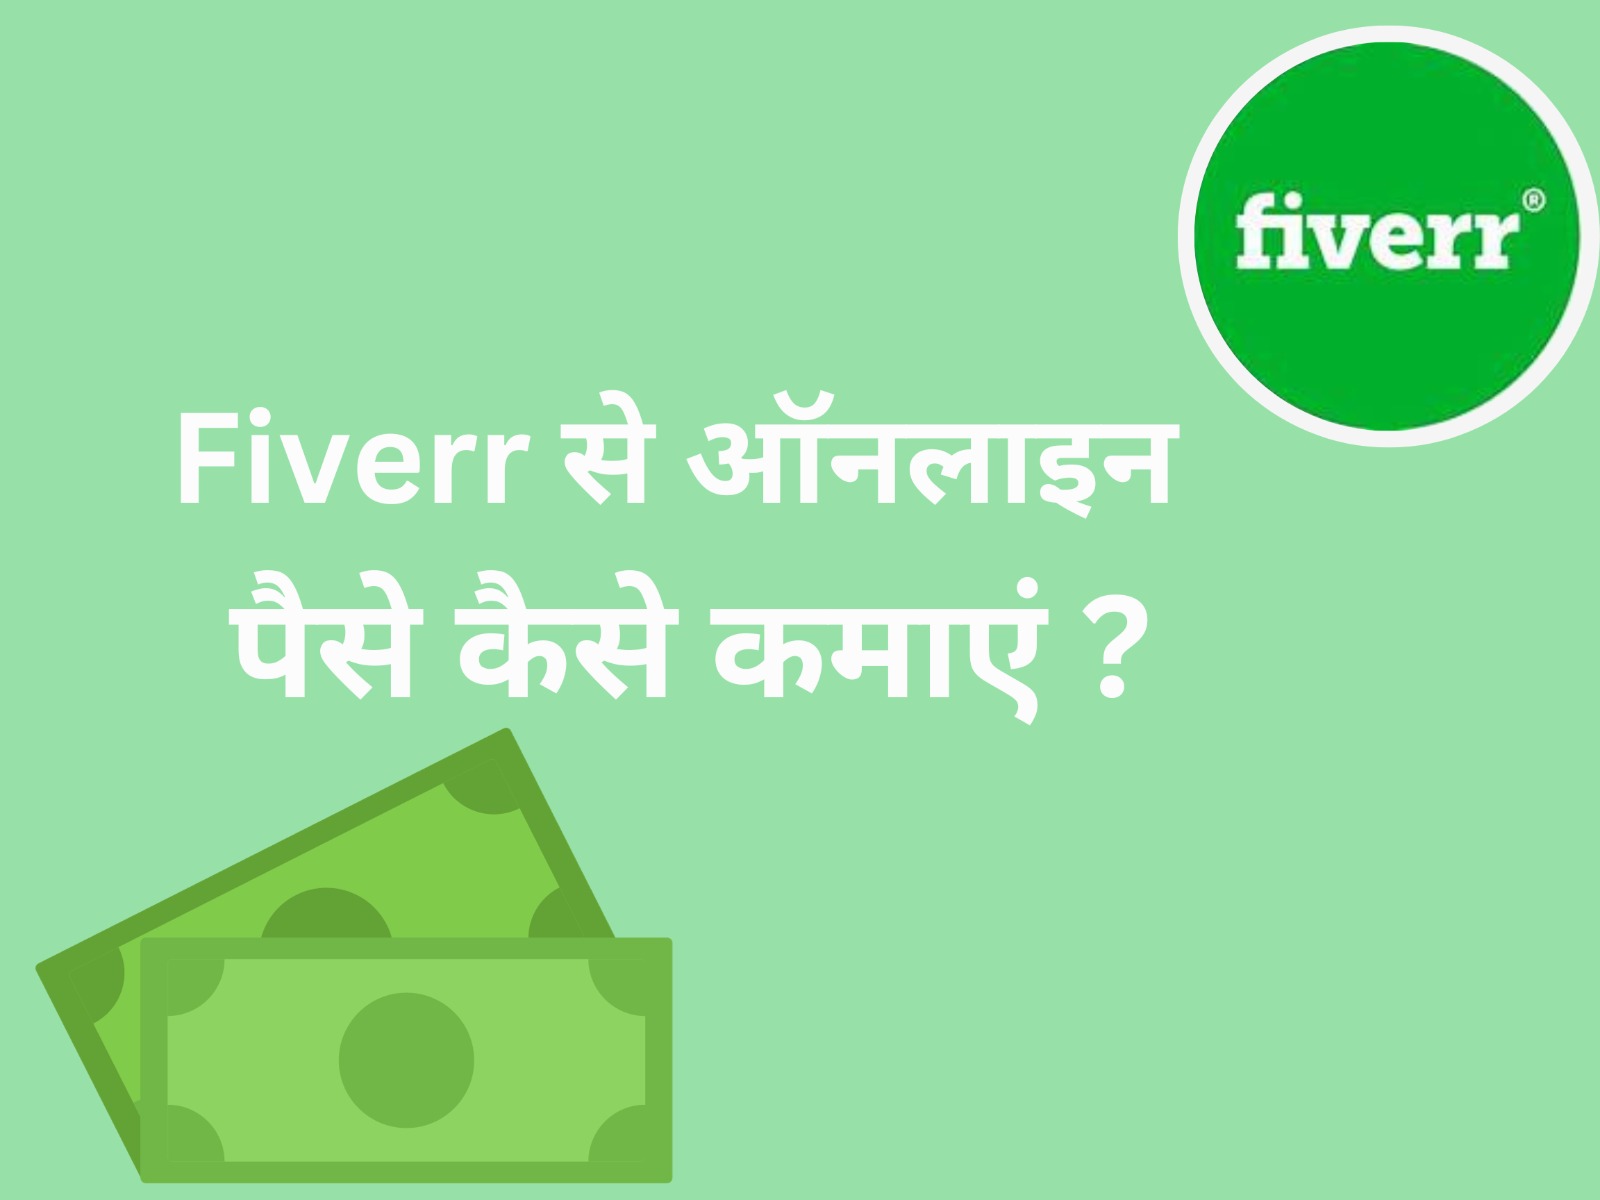 Fiverr का उपयोग करके पैसे कैसे कमाए जा सकते हैं